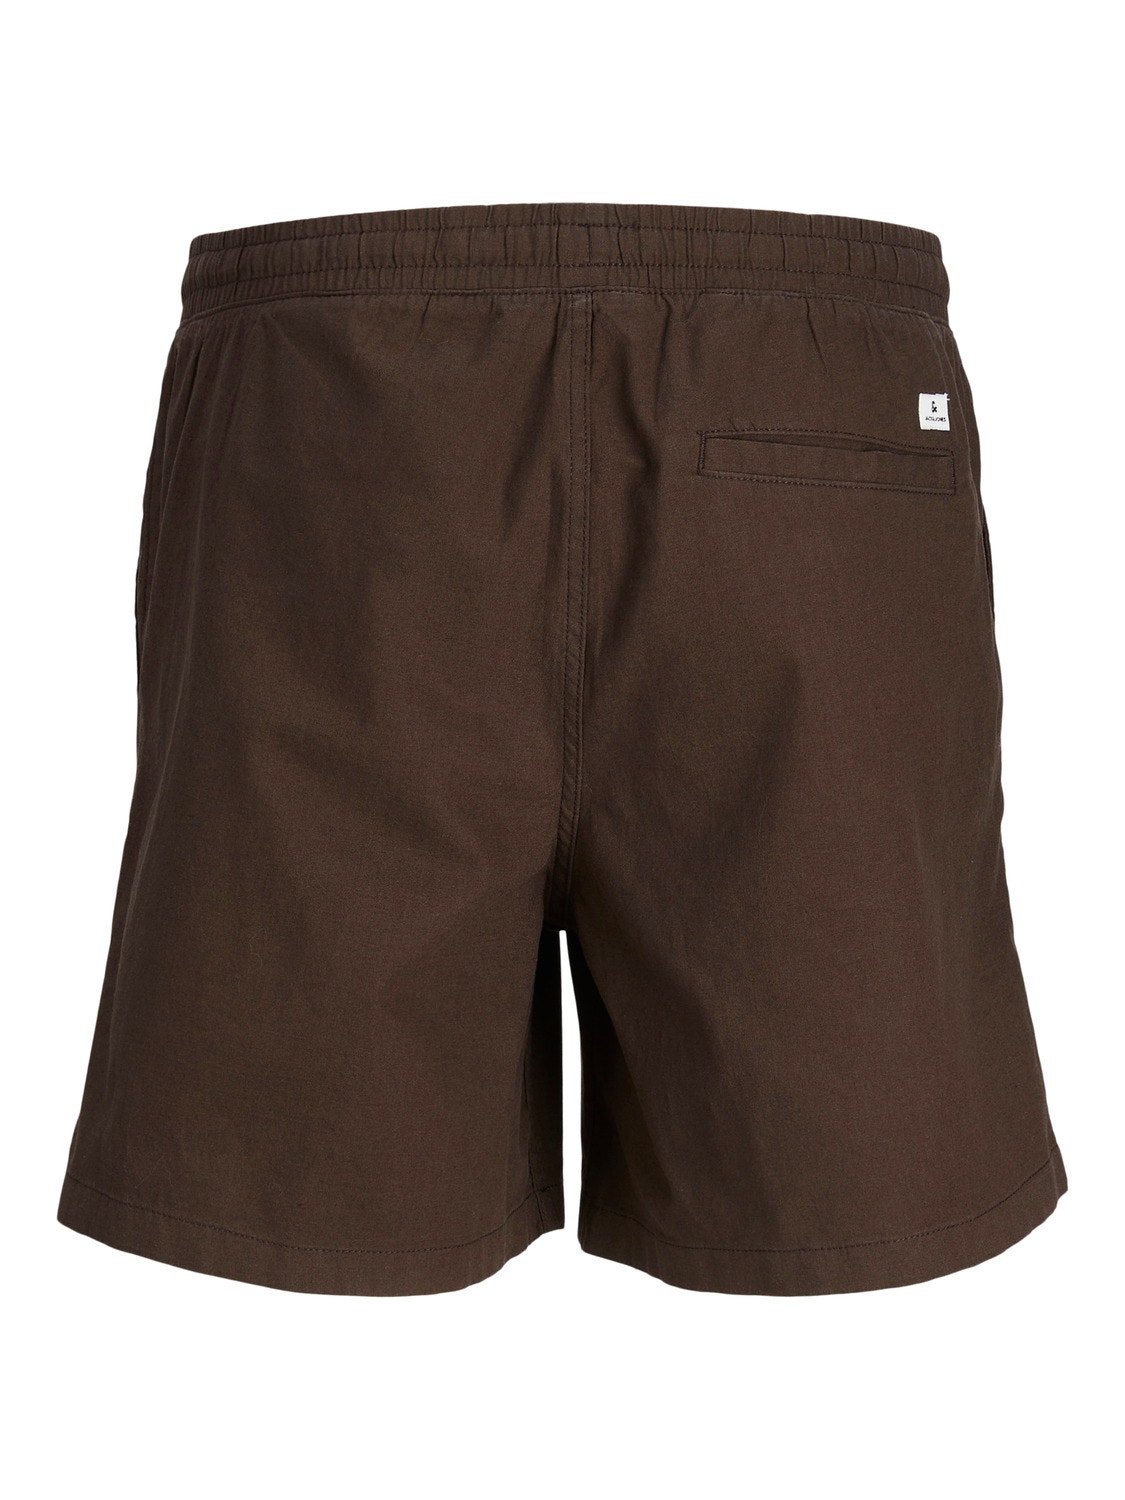 Jack & Jones Regular Fit Shorts -Seal Brown - 12248629